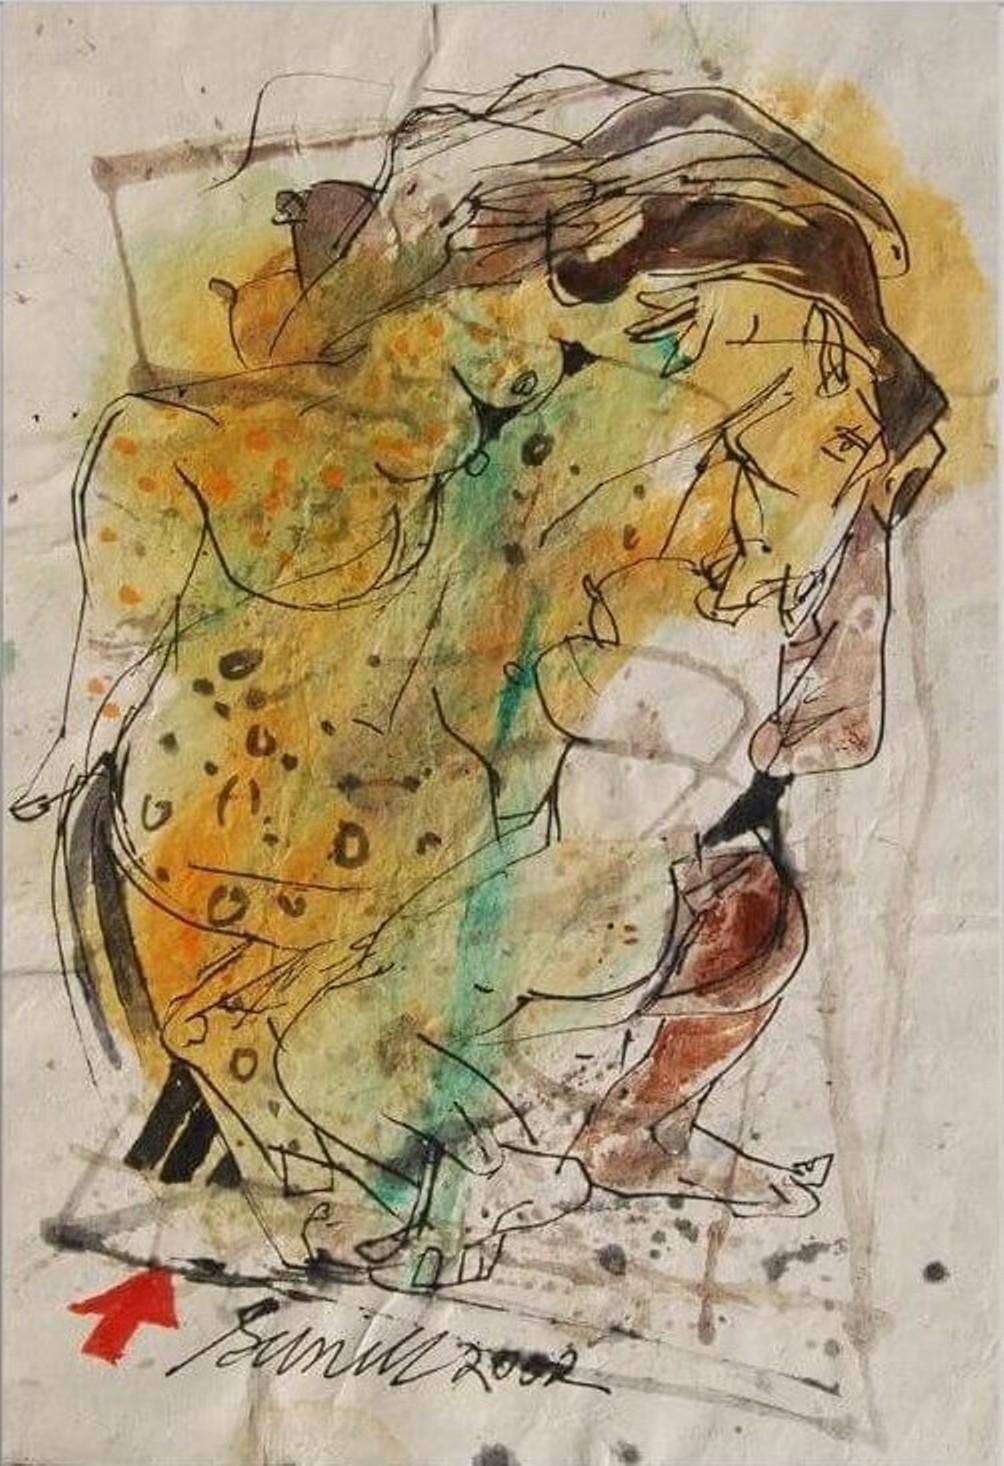 Sunil Das - Farbbasierte Zeichnungen, 
13 x 9,5 Zoll Ungerahmte Formate
Acryl, Aquarell, Feder und Tinte auf handgeschöpftem Papier, 2002
( Ungerahmt & Geliefert )

Sunil Das (1939-2015) war ein moderner indischer Meisterkünstler aus Bengalen. Sunil